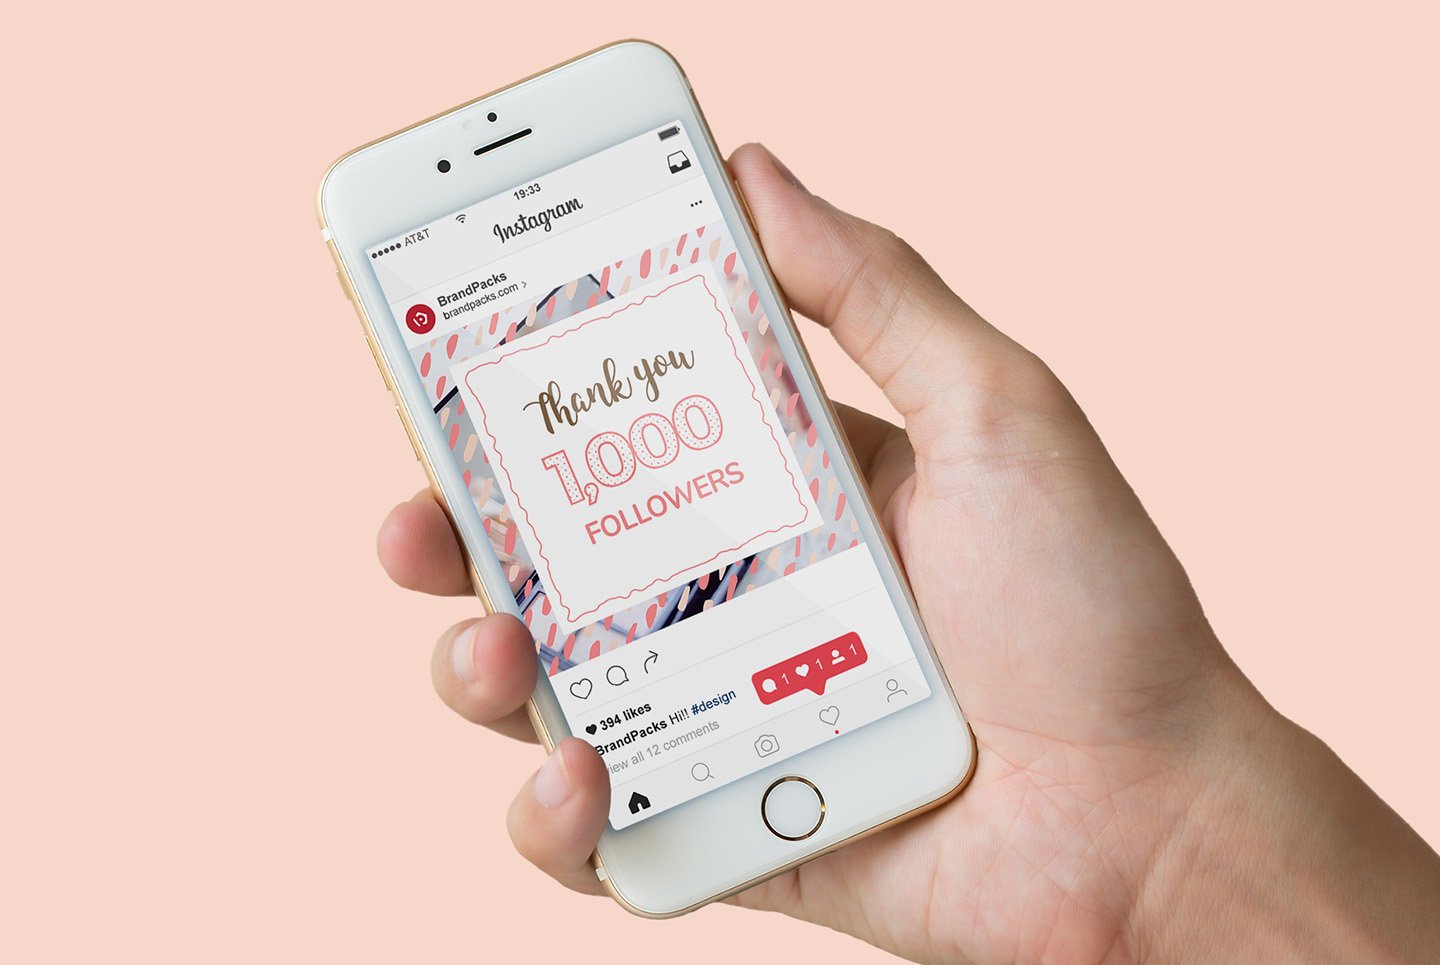 粉色系女性化妆品服装电商营销海报Instagram模板 Social Media Templates Pack Vol.5插图3